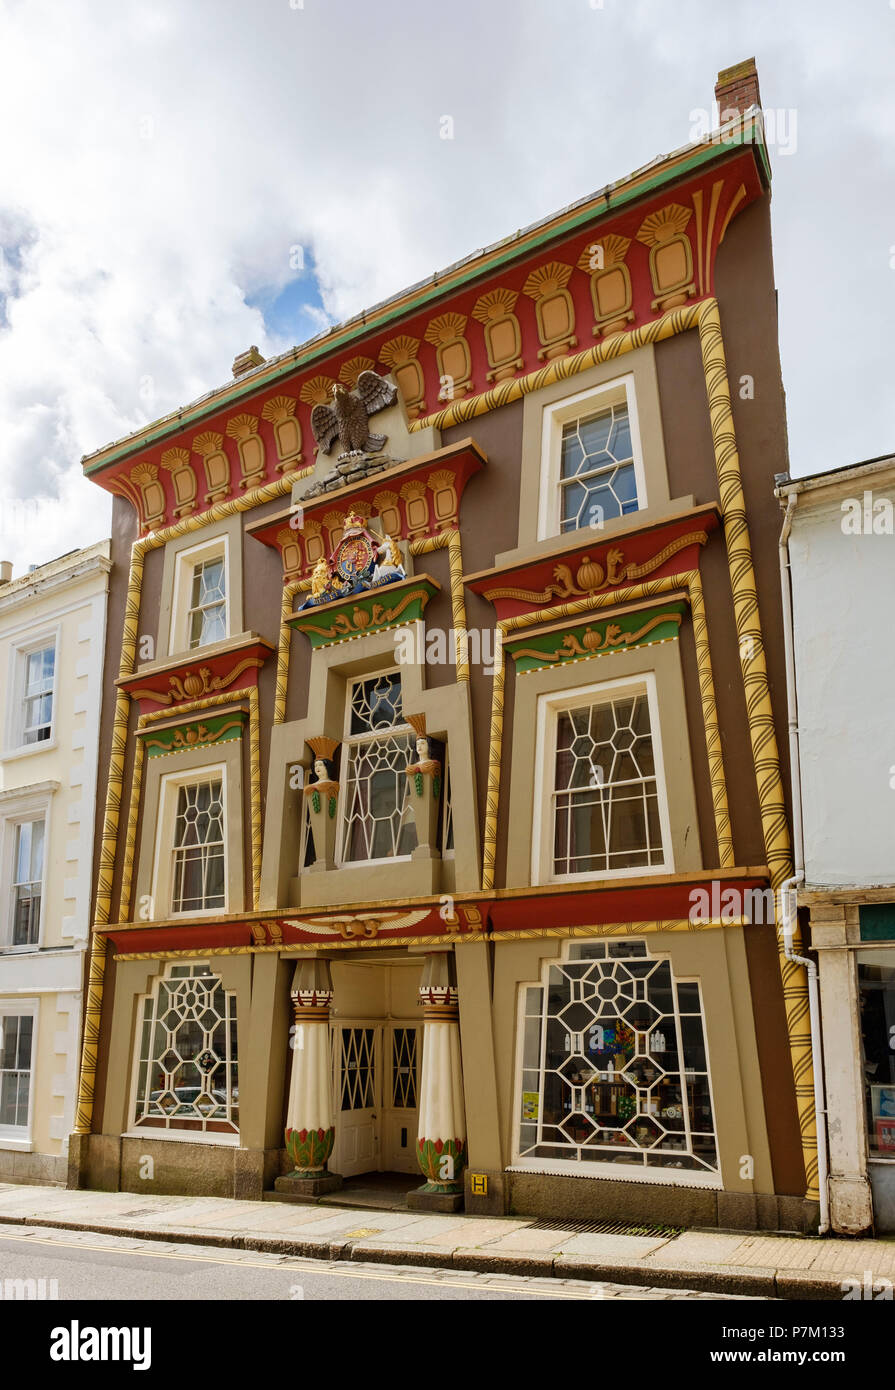 Egyptian House, Penzance, Cornwall, England, United Kingdom Stock Photo